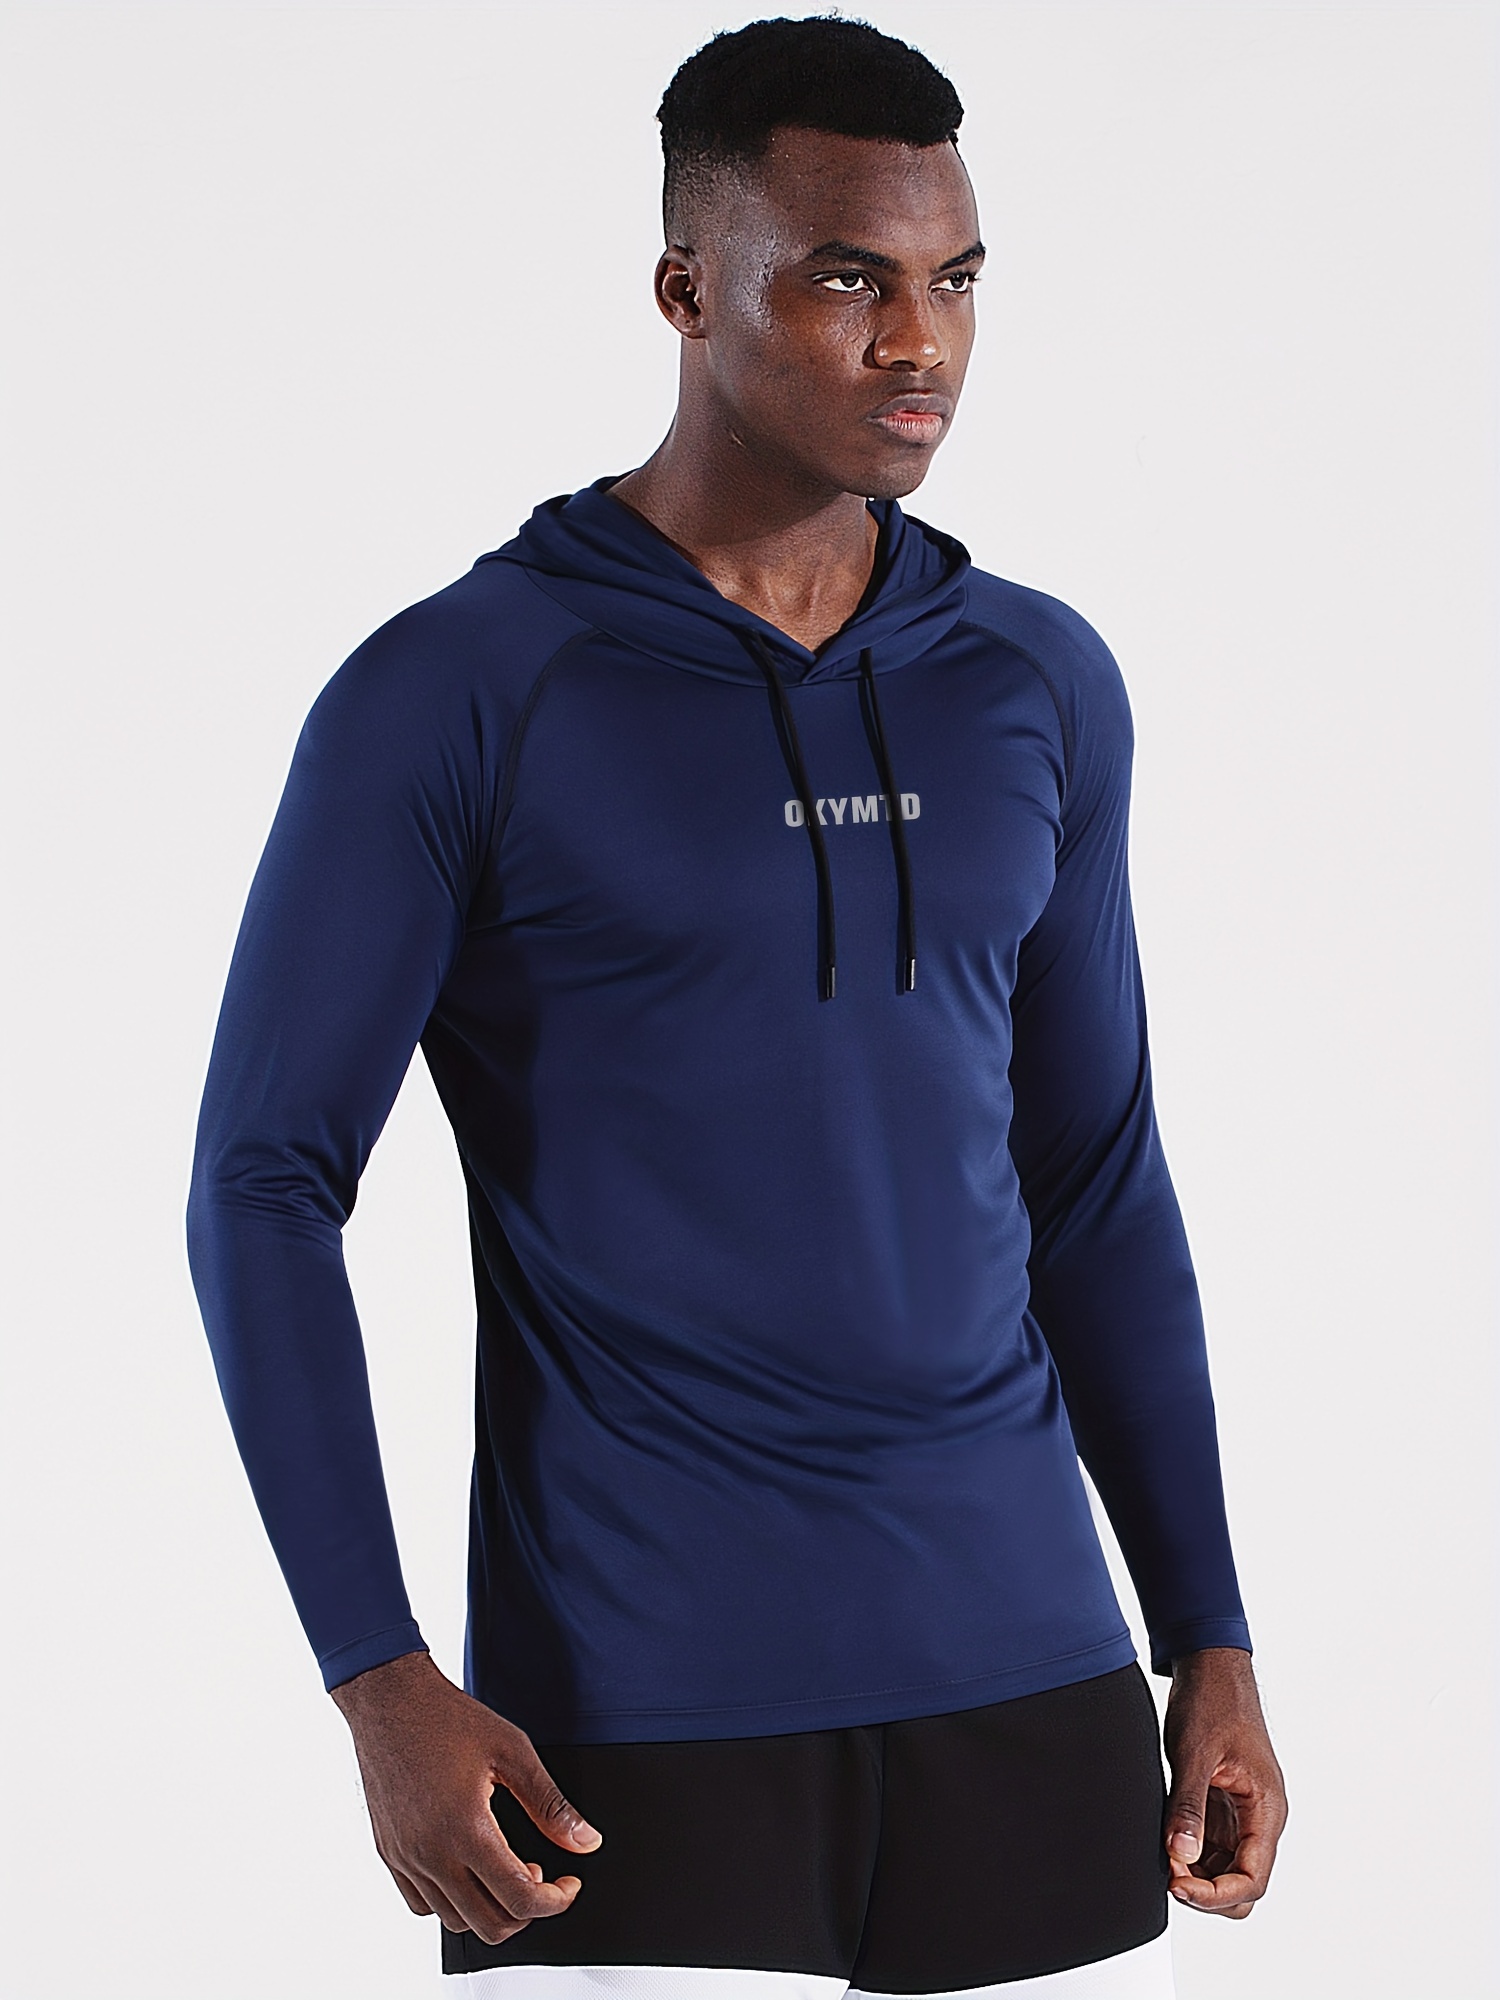 Habit Men's Hidden Cove Hooded Lightweight Performance Layer Shirt  (Moonlight Blue, M) 